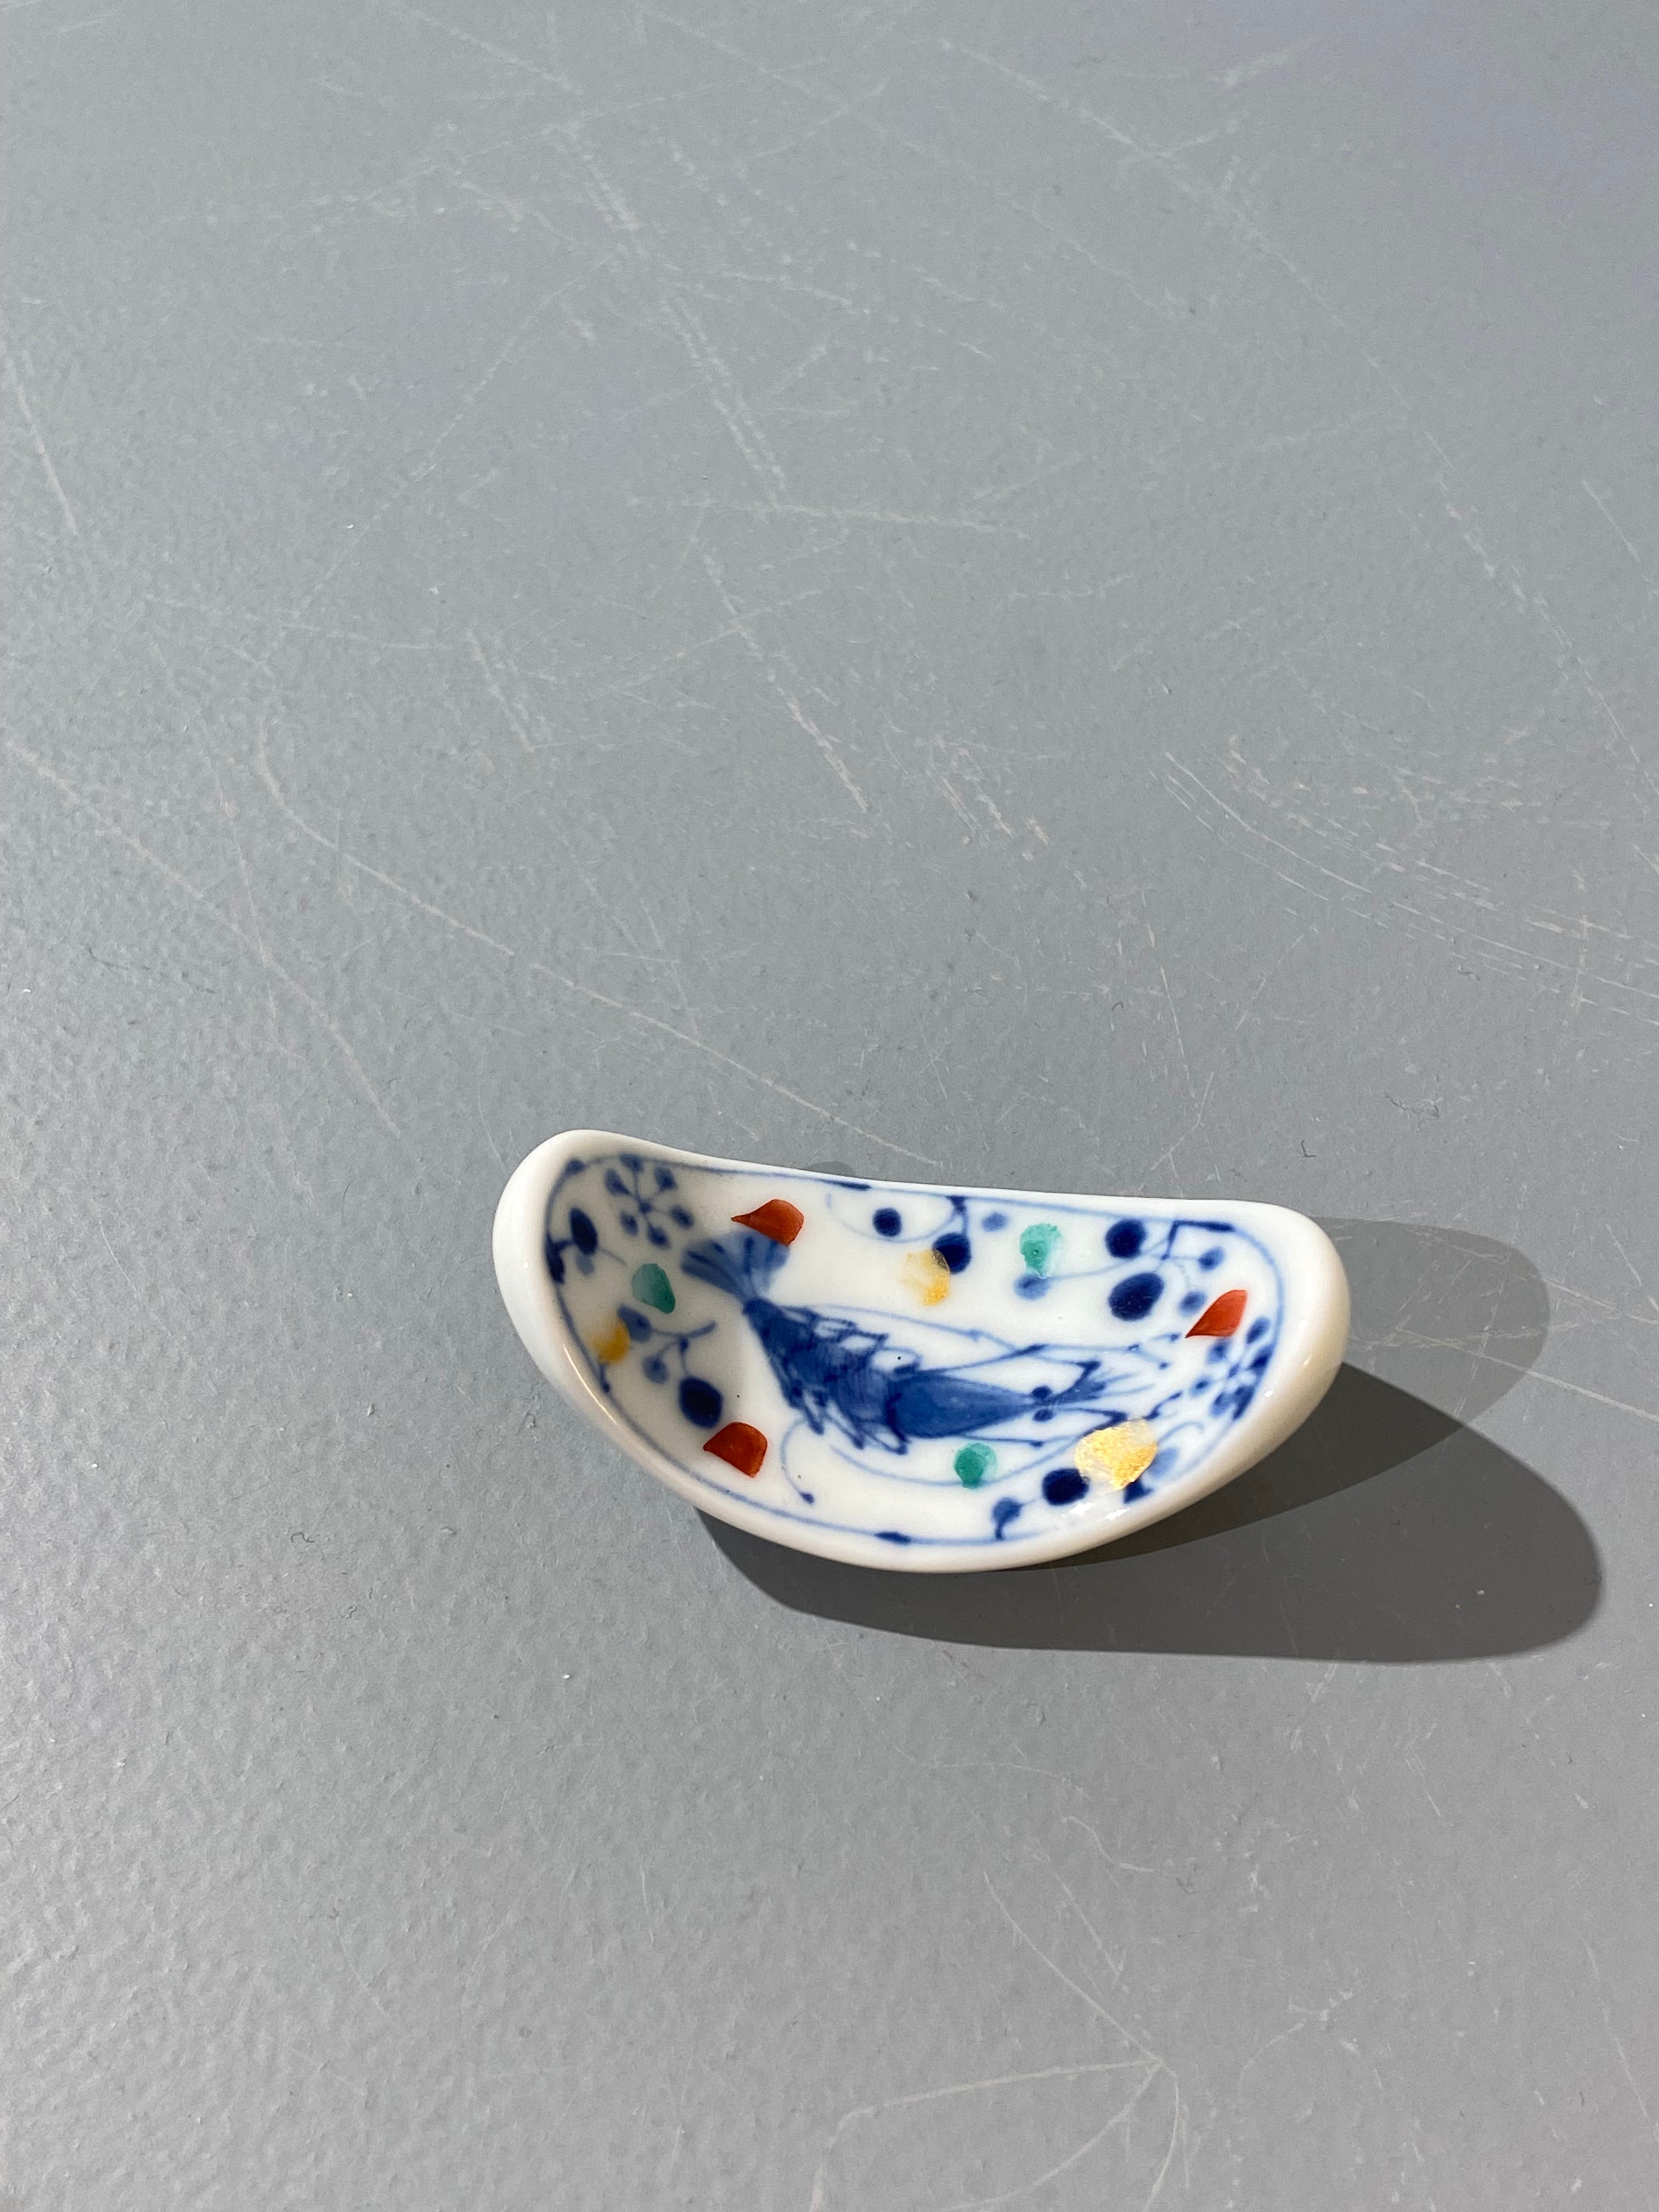 Chopstick holder: Japanese motif with shrimp